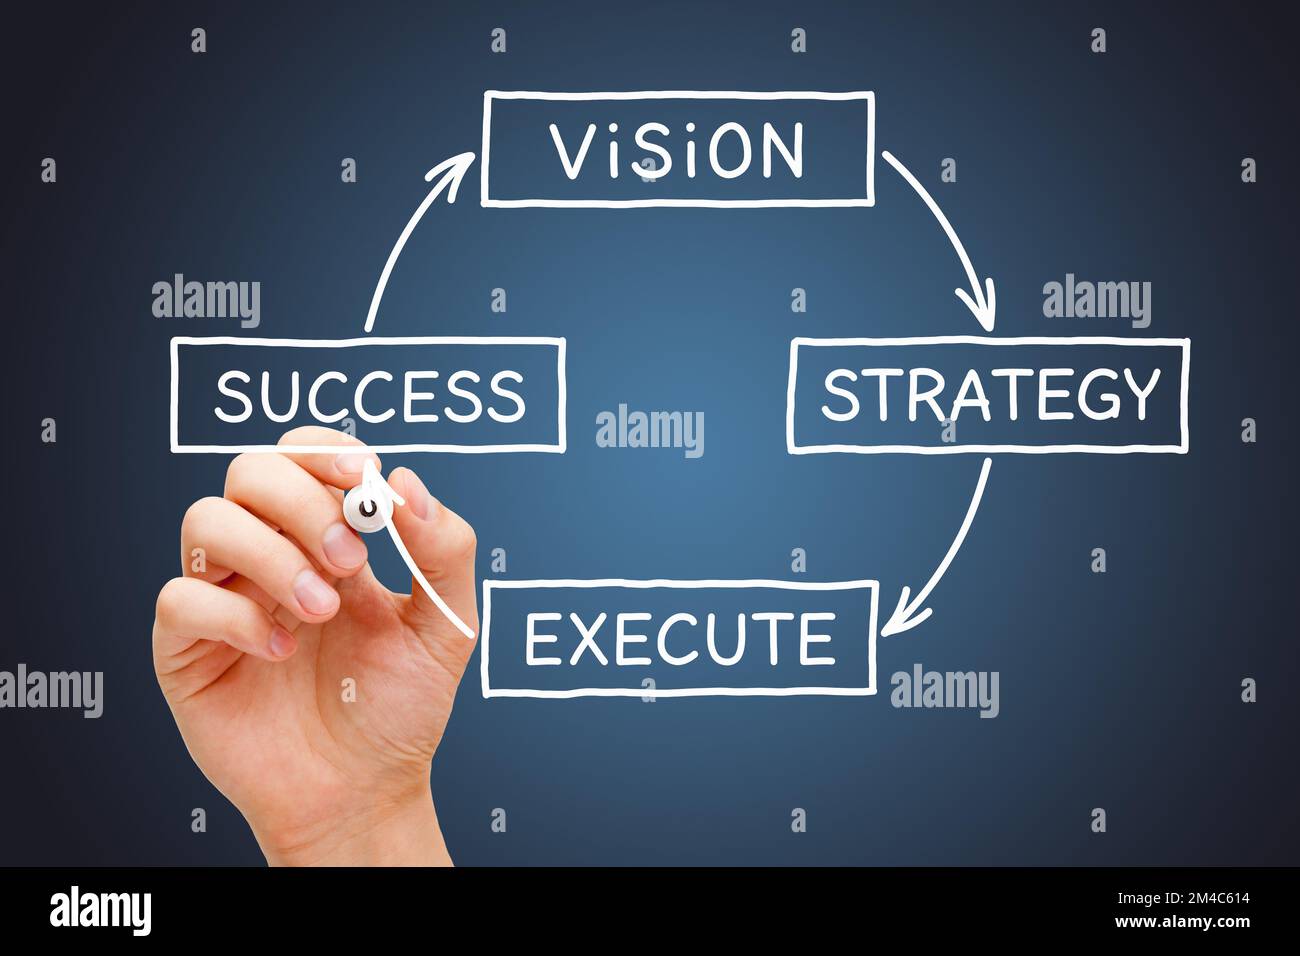 Disegnare a mano un diagramma aziendale con il processo dalla visione alla strategia, dall'esecuzione al successo. Foto Stock